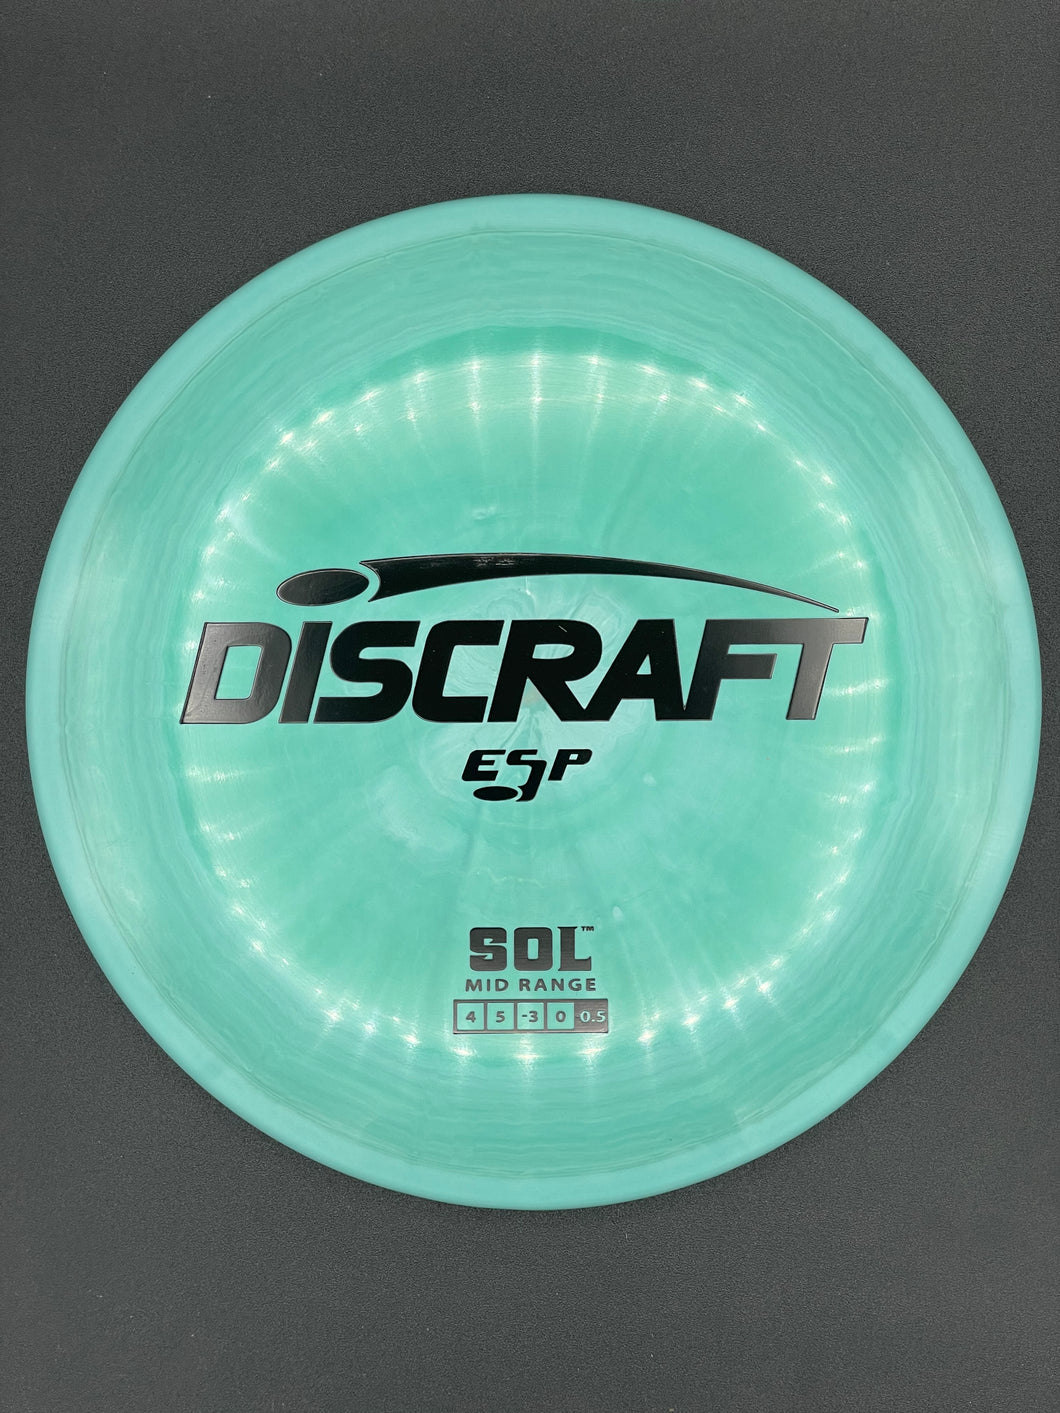 Sol / Discraft / ESP